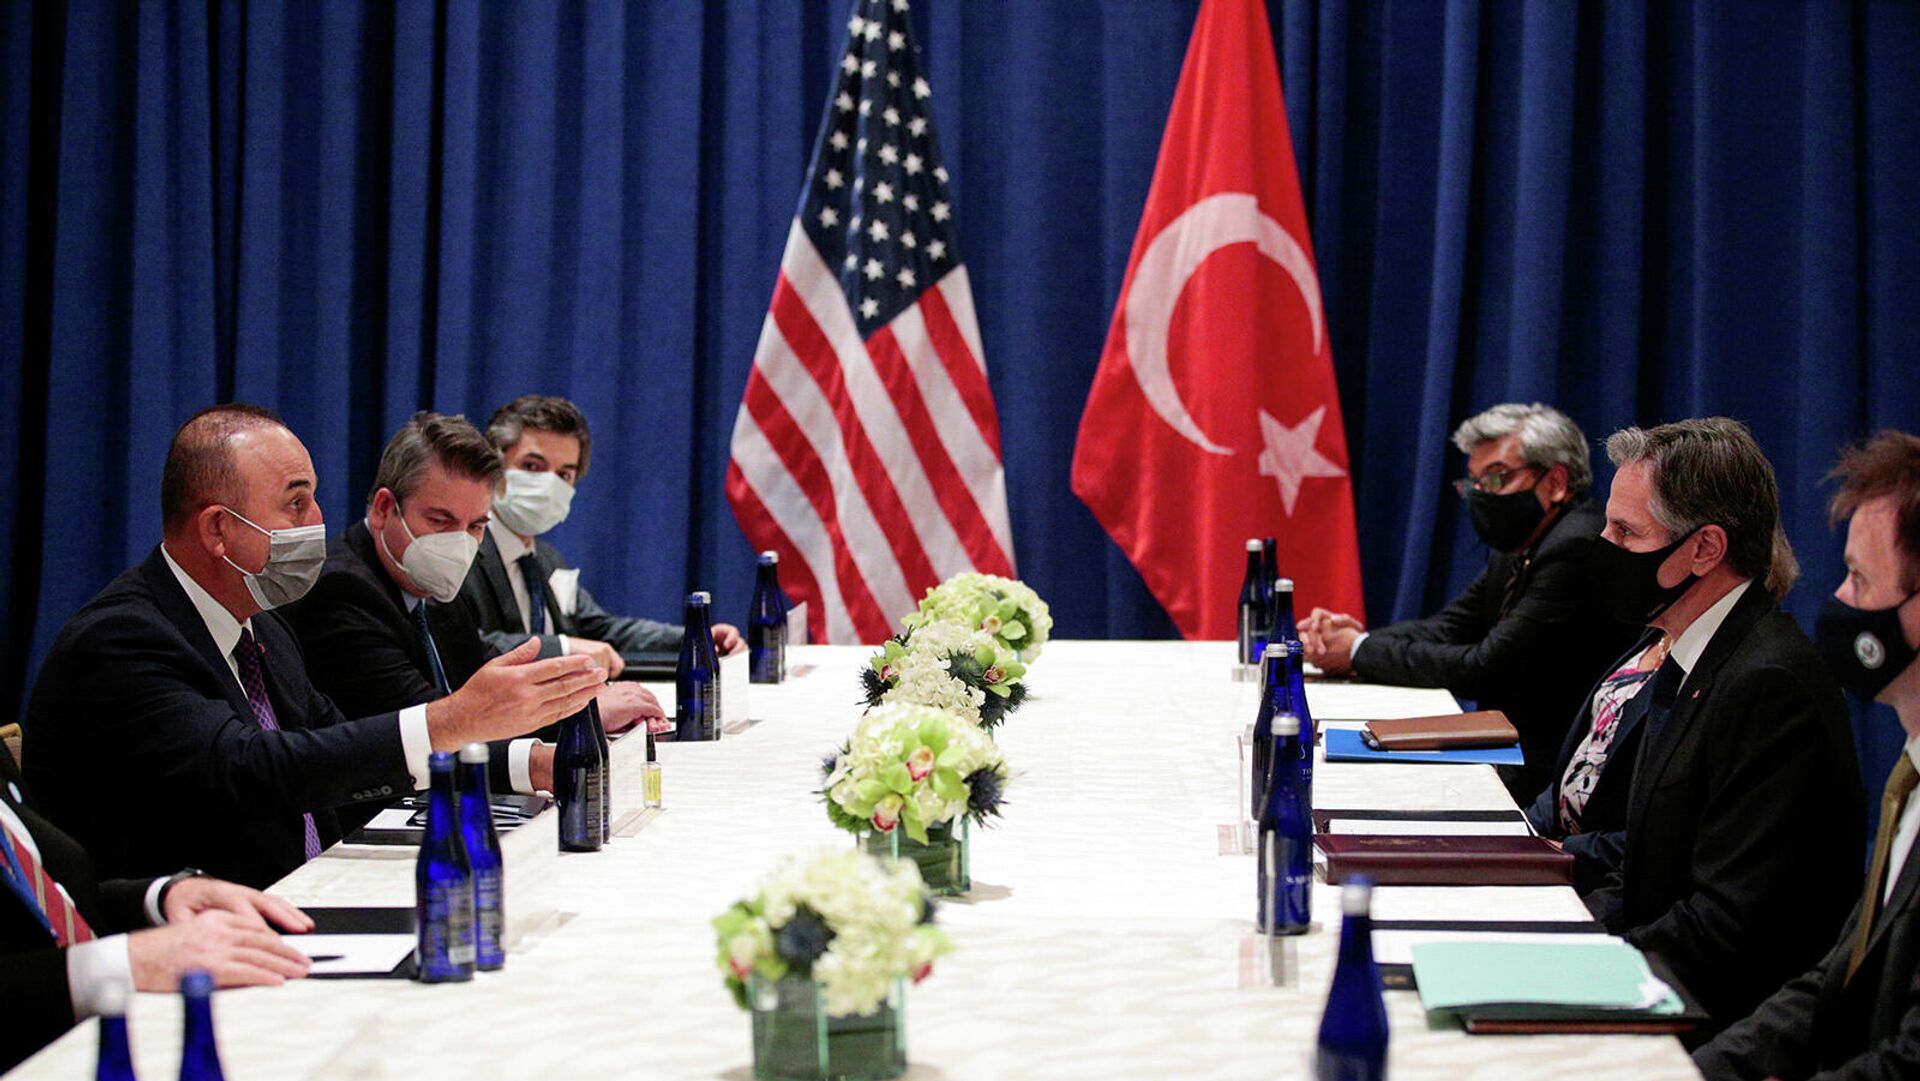 Միացյալ Նահանգների և Թուրքիայի արտաքին քաղաքական գերատեսչությունների ղեկավարները երկարատև զրույց են ունեցել։ - Sputnik Արմենիա, 1920, 22.09.2021